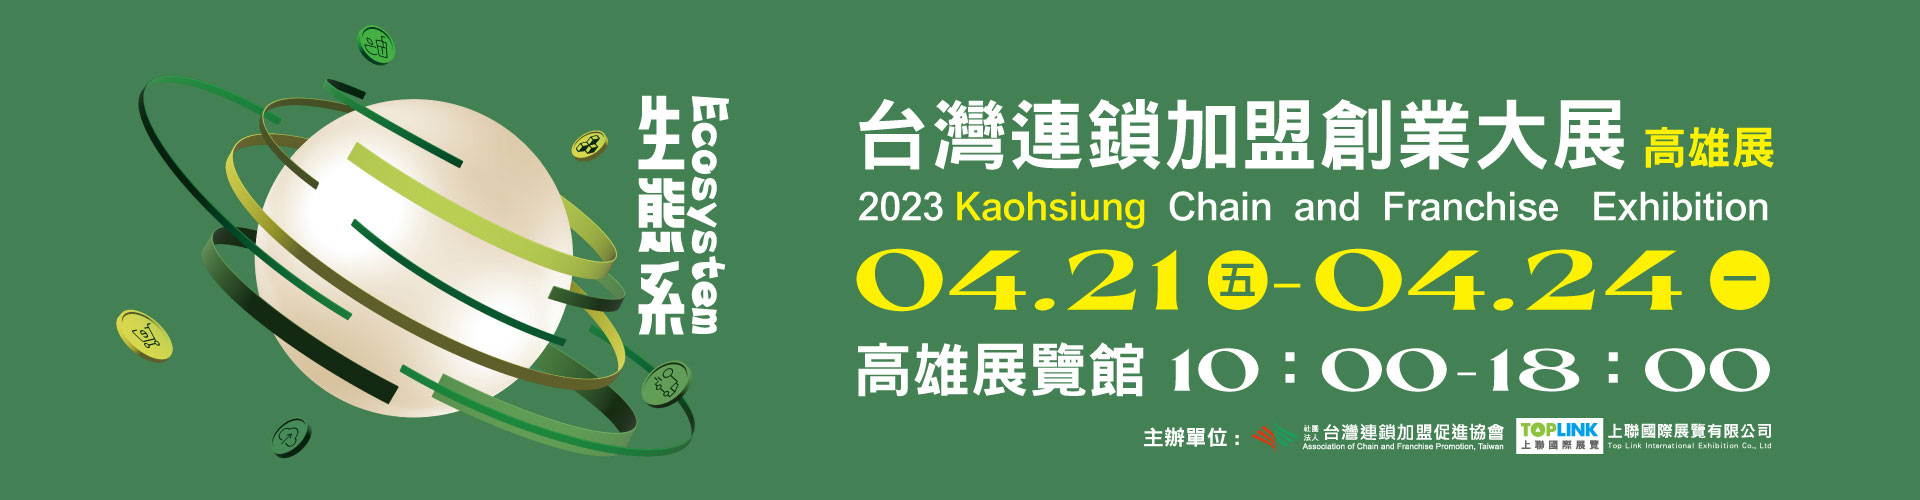 2023台灣連鎖加盟創業大展-高雄展